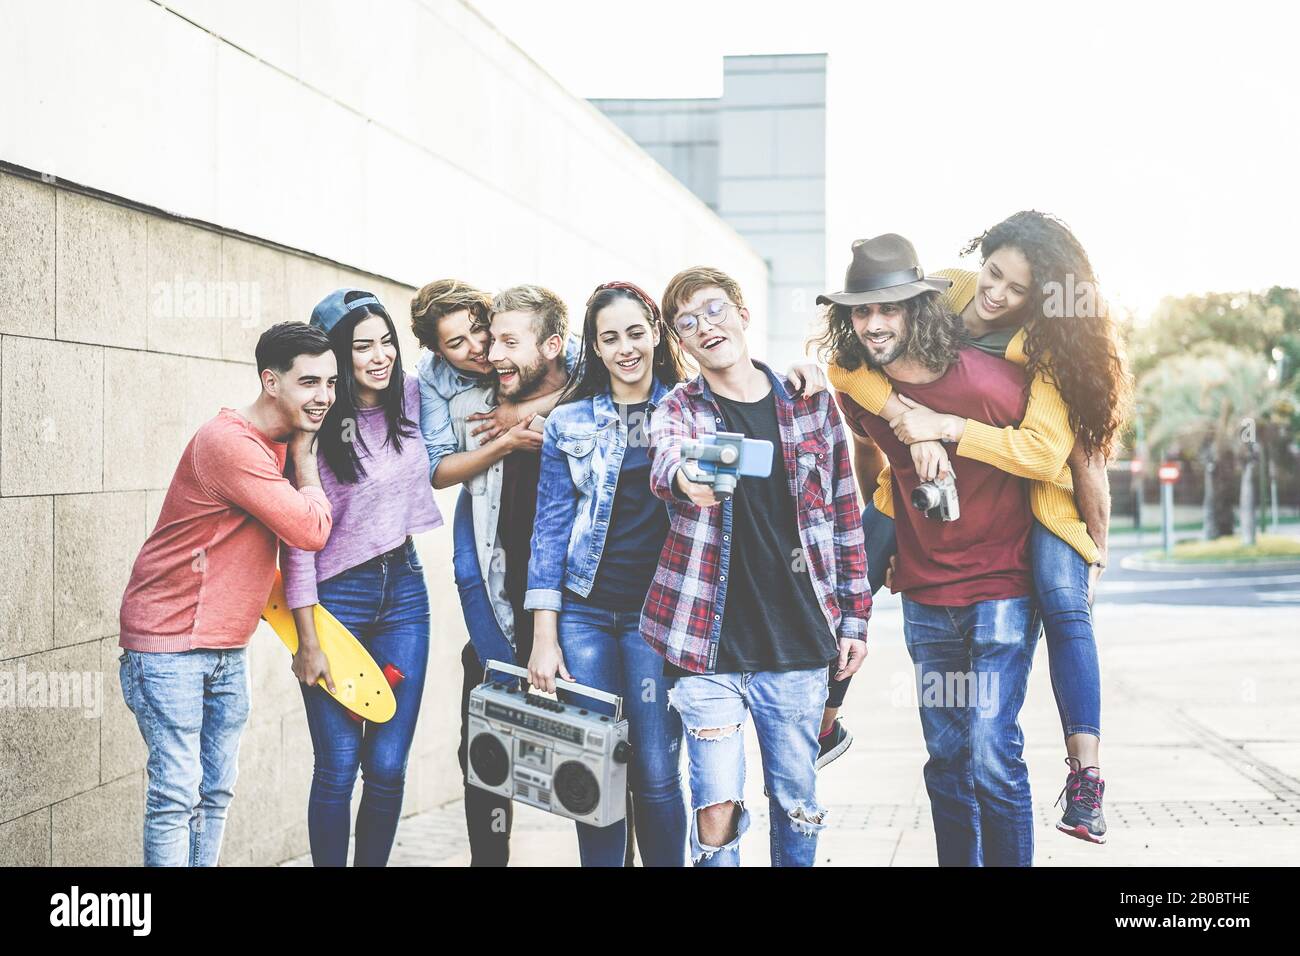 Fröhliche Millennials Freunde, die mit Smartphone im Freien Video-Social-Feed machen - Junge Leute haben Spaß mit dem neuen Technologietrend - Youth Lifestyl Stockfoto